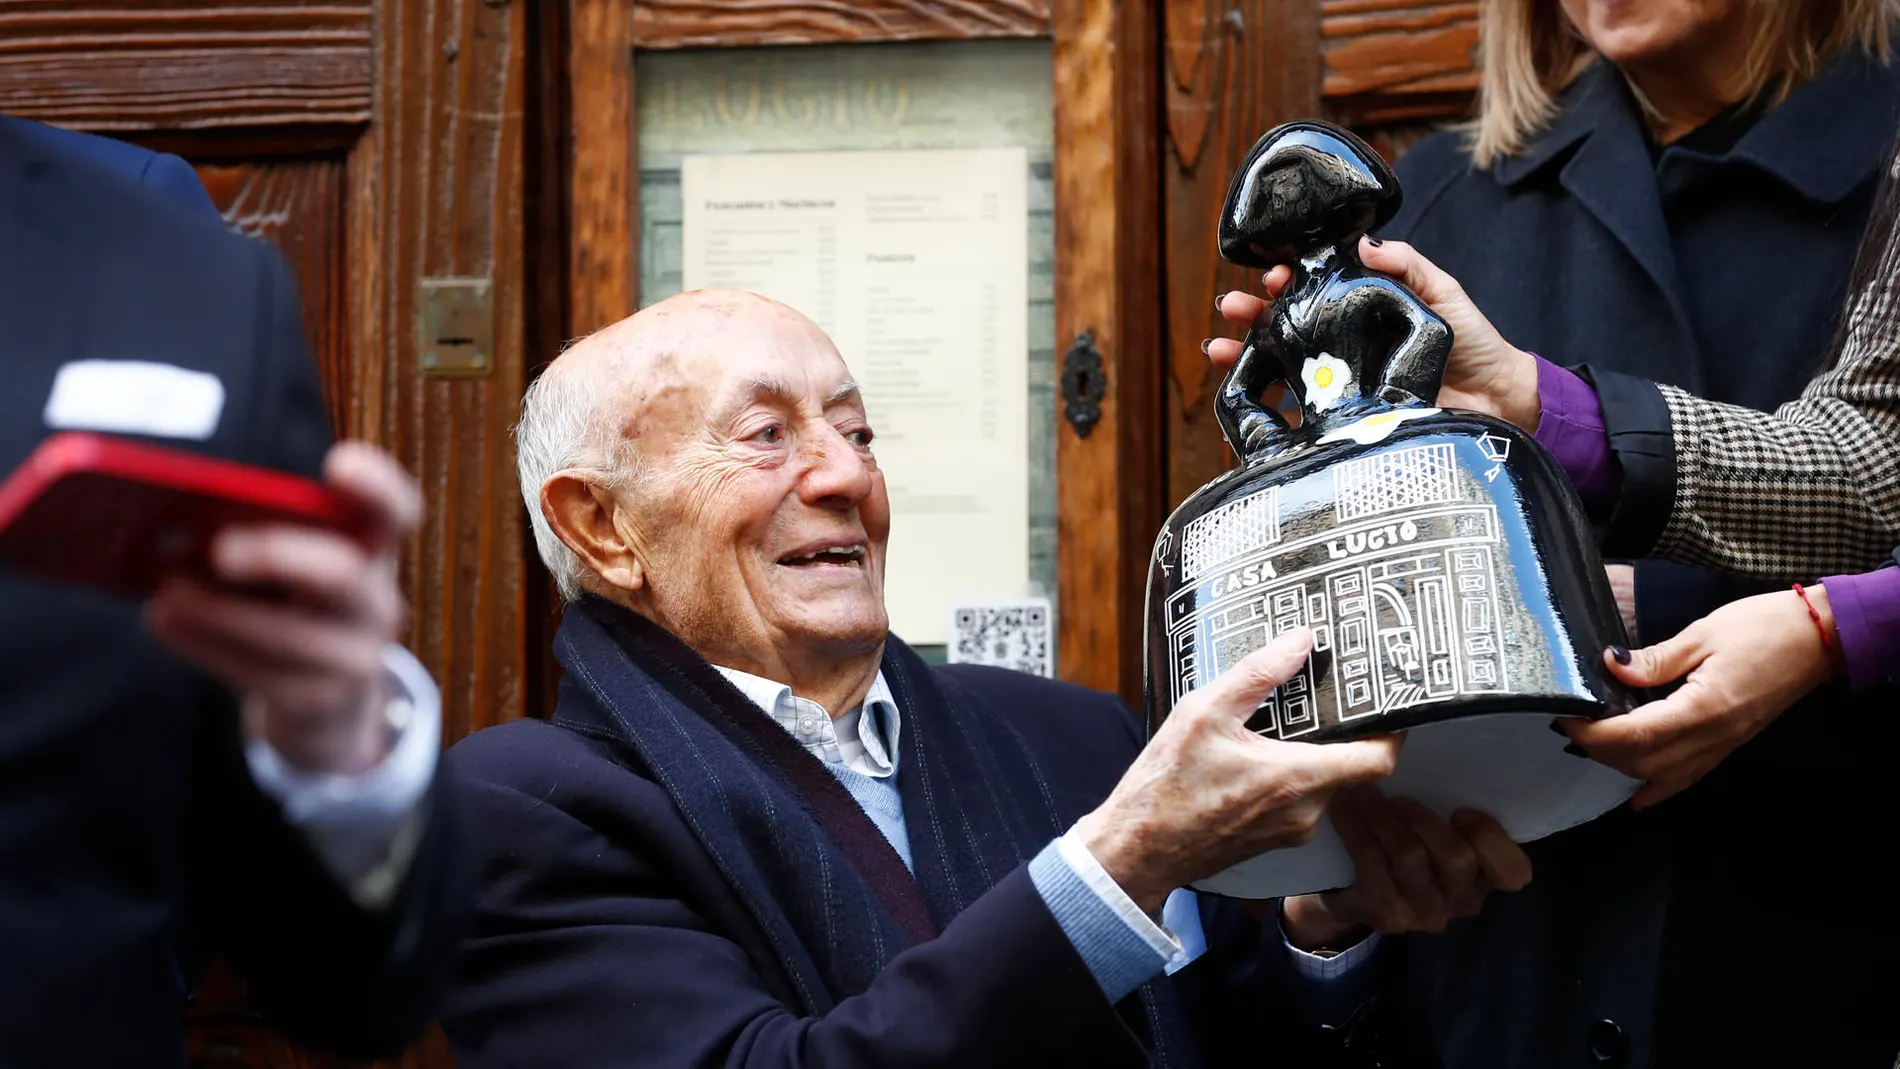 Homenaje a Lucio por sus casi 80 años al frente de su restaurante